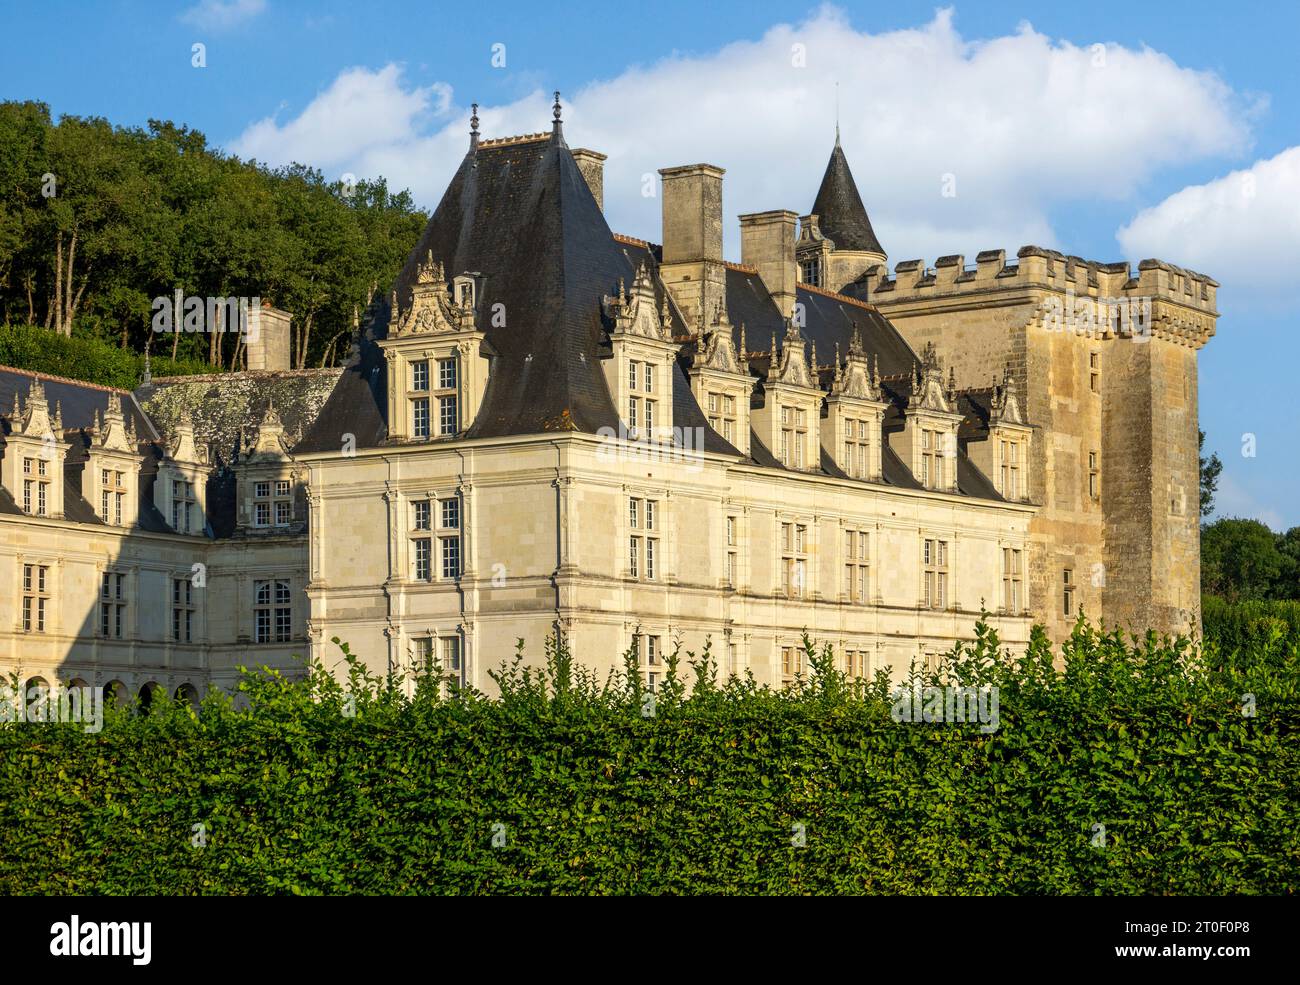 Le château de Villandry est situé à environ 17 km à l'ouest de la ville de Tours. Le village éponyme de Villandry est situé sur le cher et est la dernière commune avant sa confluence avec la Loire. Banque D'Images